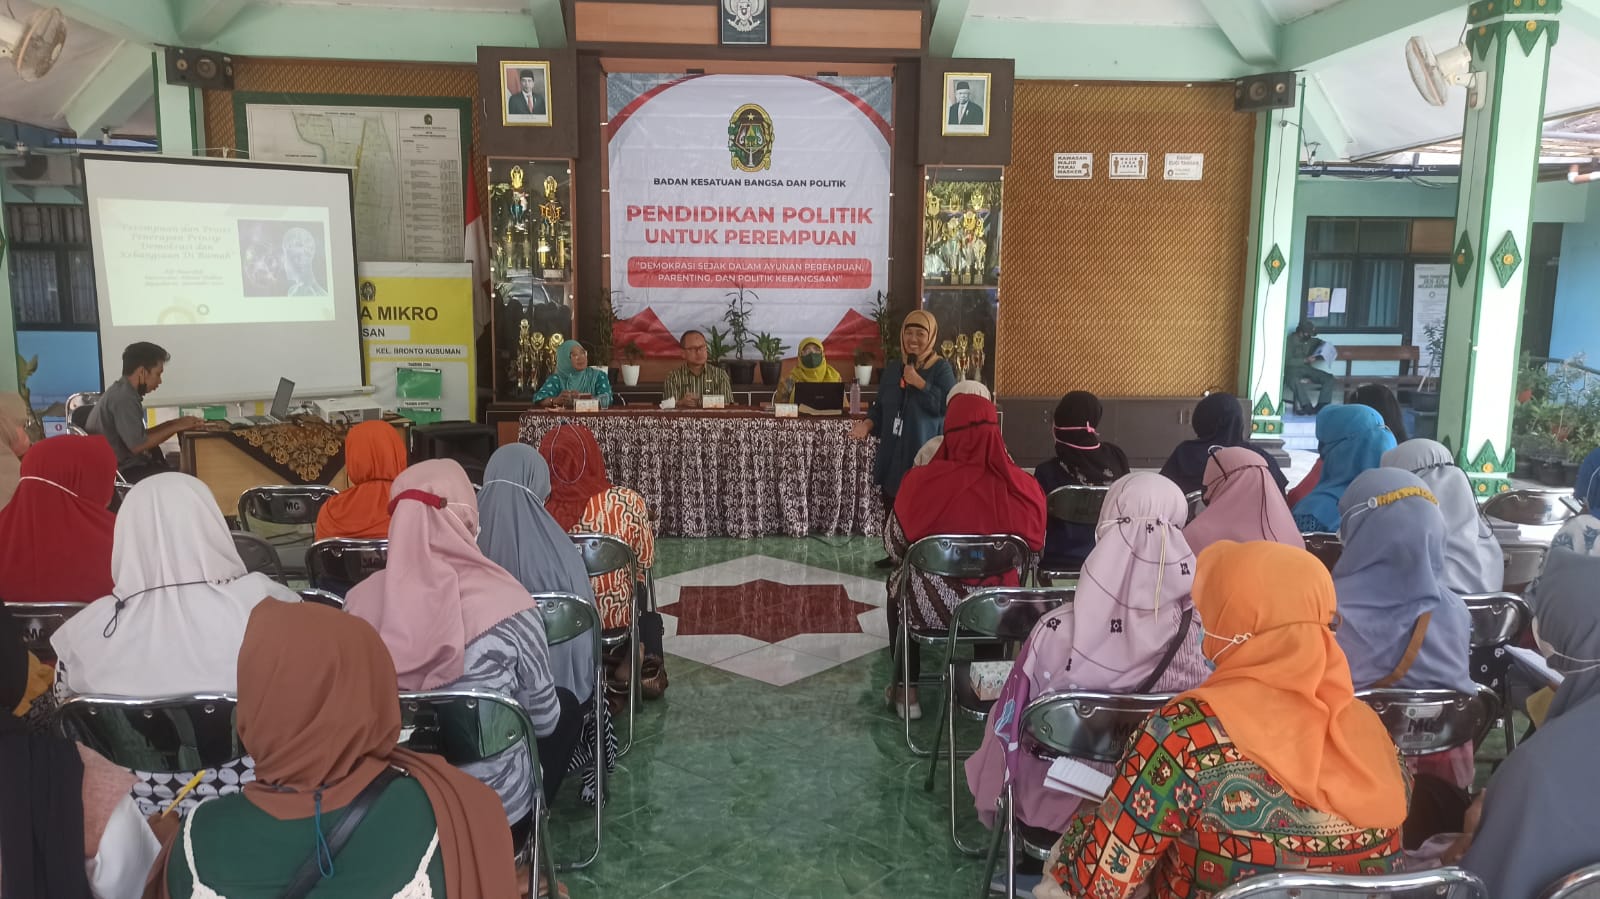 Workshop Pendidikan Politik untuk Perempuan